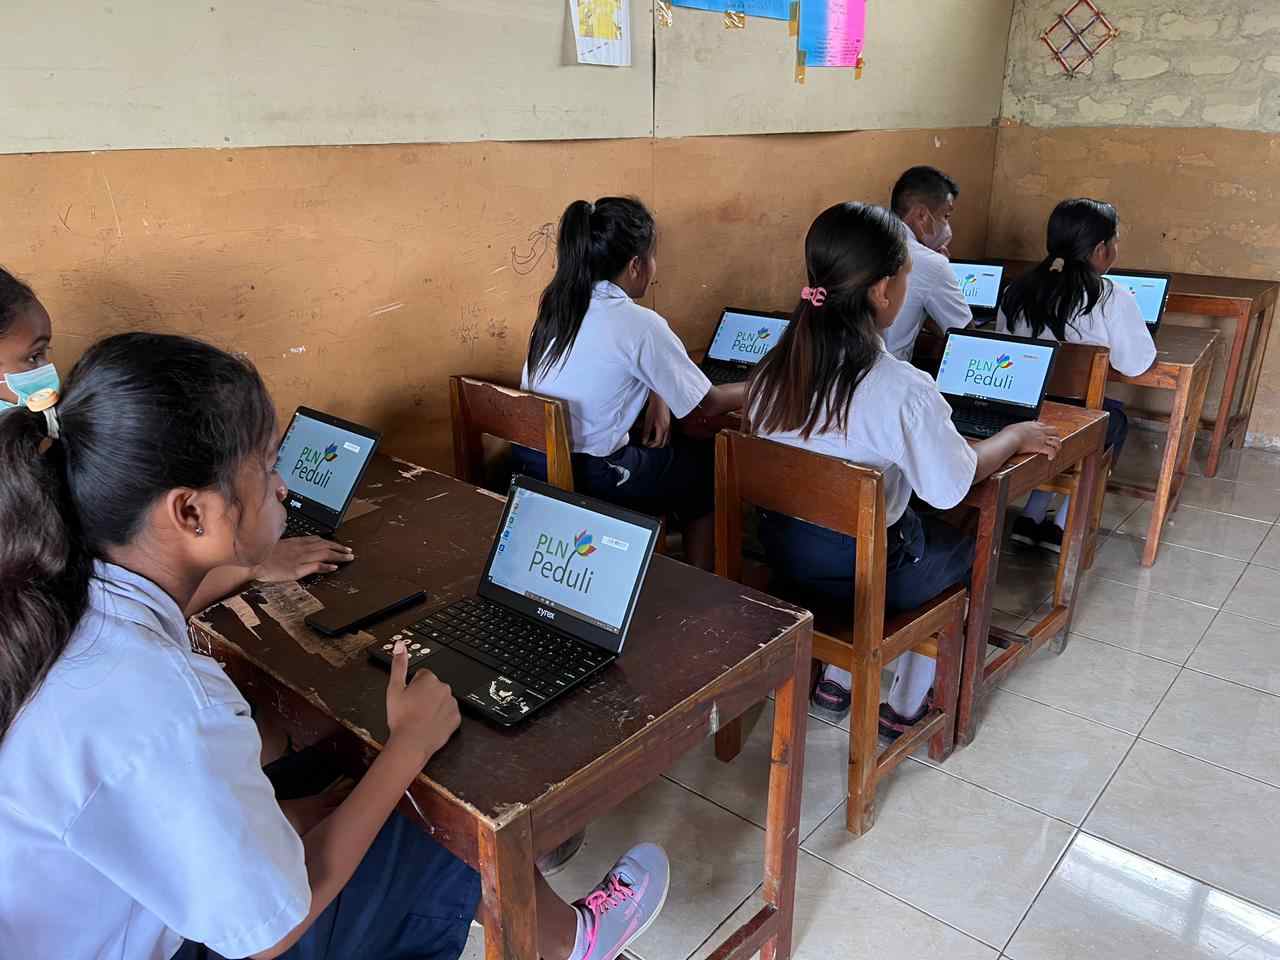 Tingkatkan Kualitas Pendidikan, PLN Salurkan 40 Laptop di Sumba